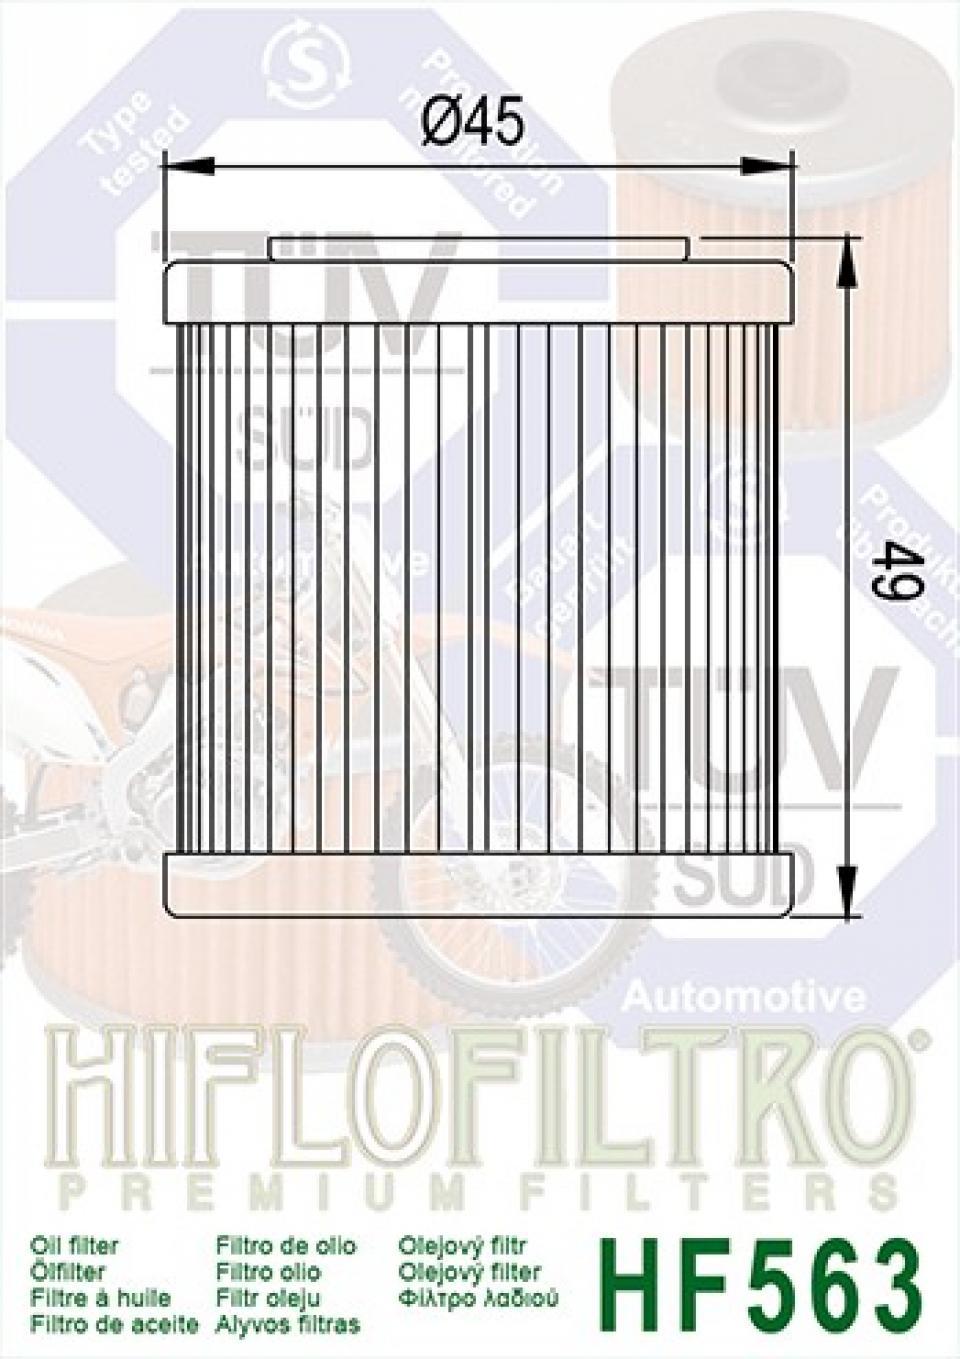 Filtre à huile Hiflo Filtro pour Moto Husqvarna 250 Tc 4T 2008 2008 HF563 / 8000B0593